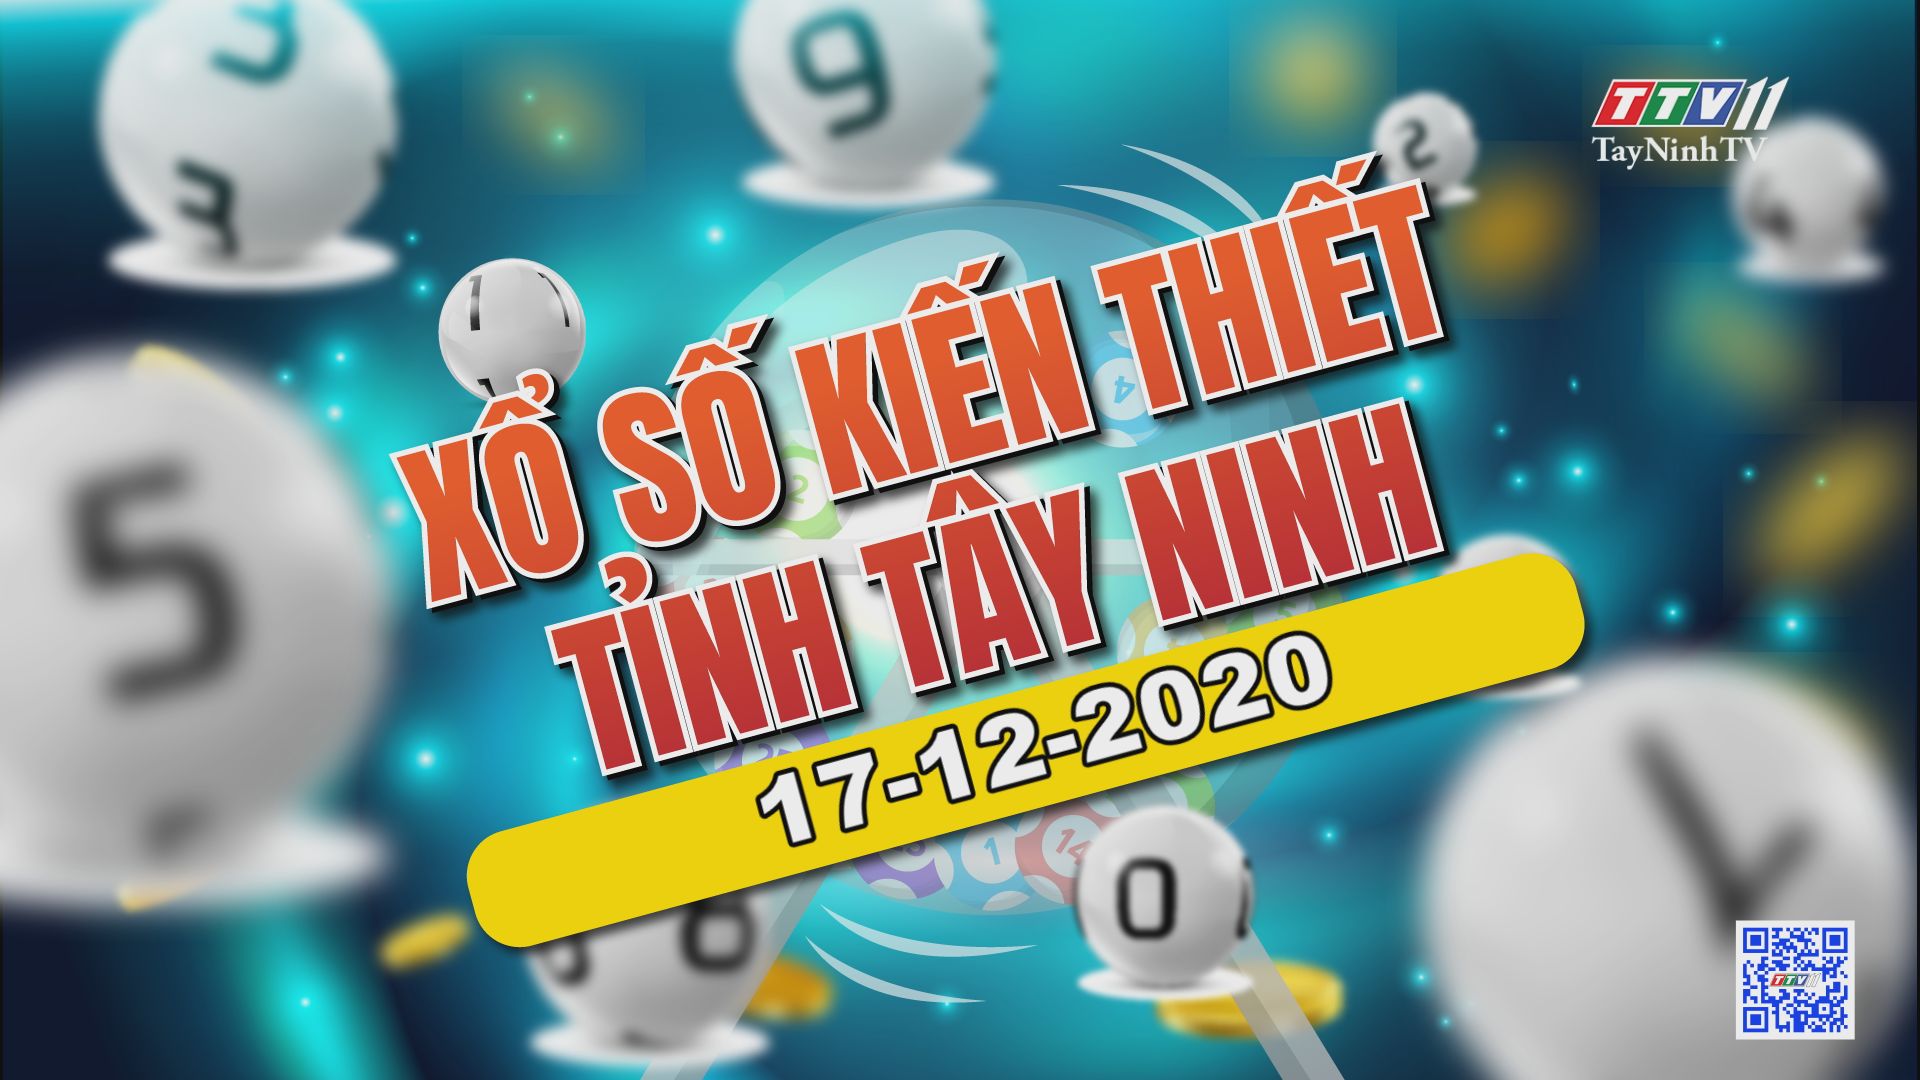 Trực tiếp Xổ số Tây Ninh ngày 17-12-2020 | TayNinhTV 